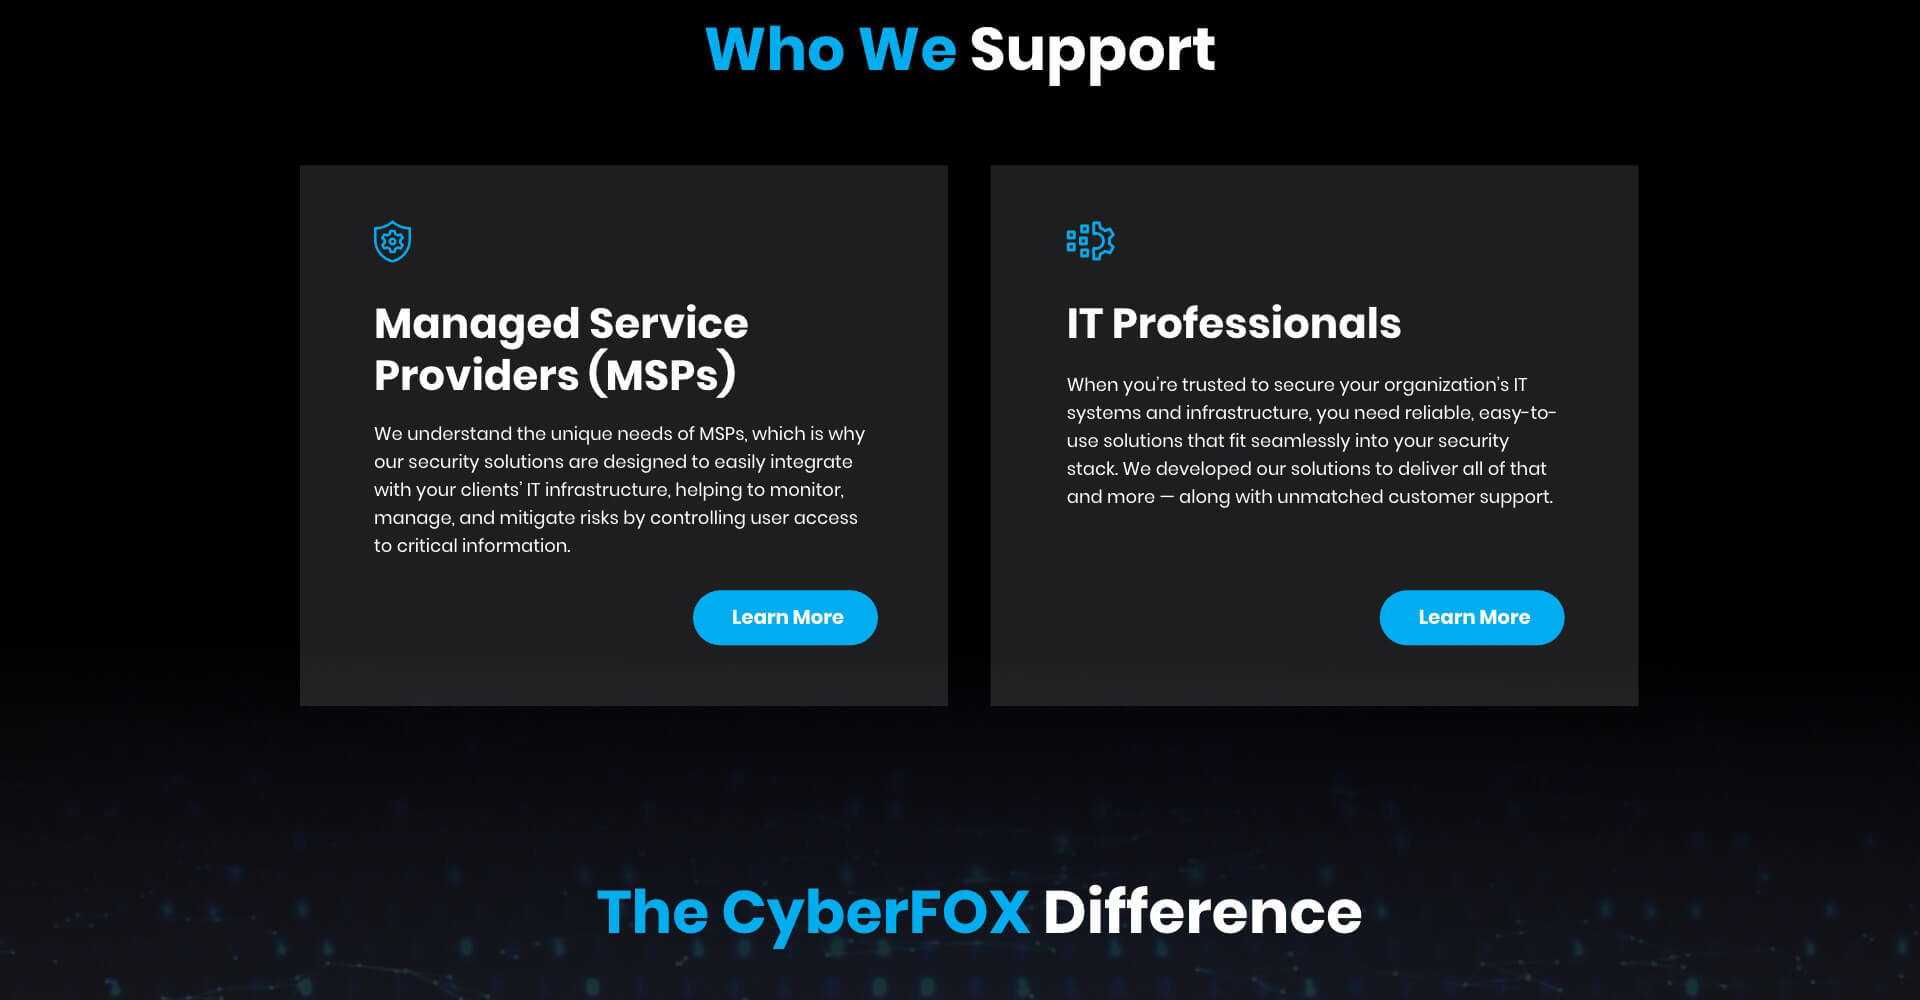 Homepage screenshot of CyberFOX